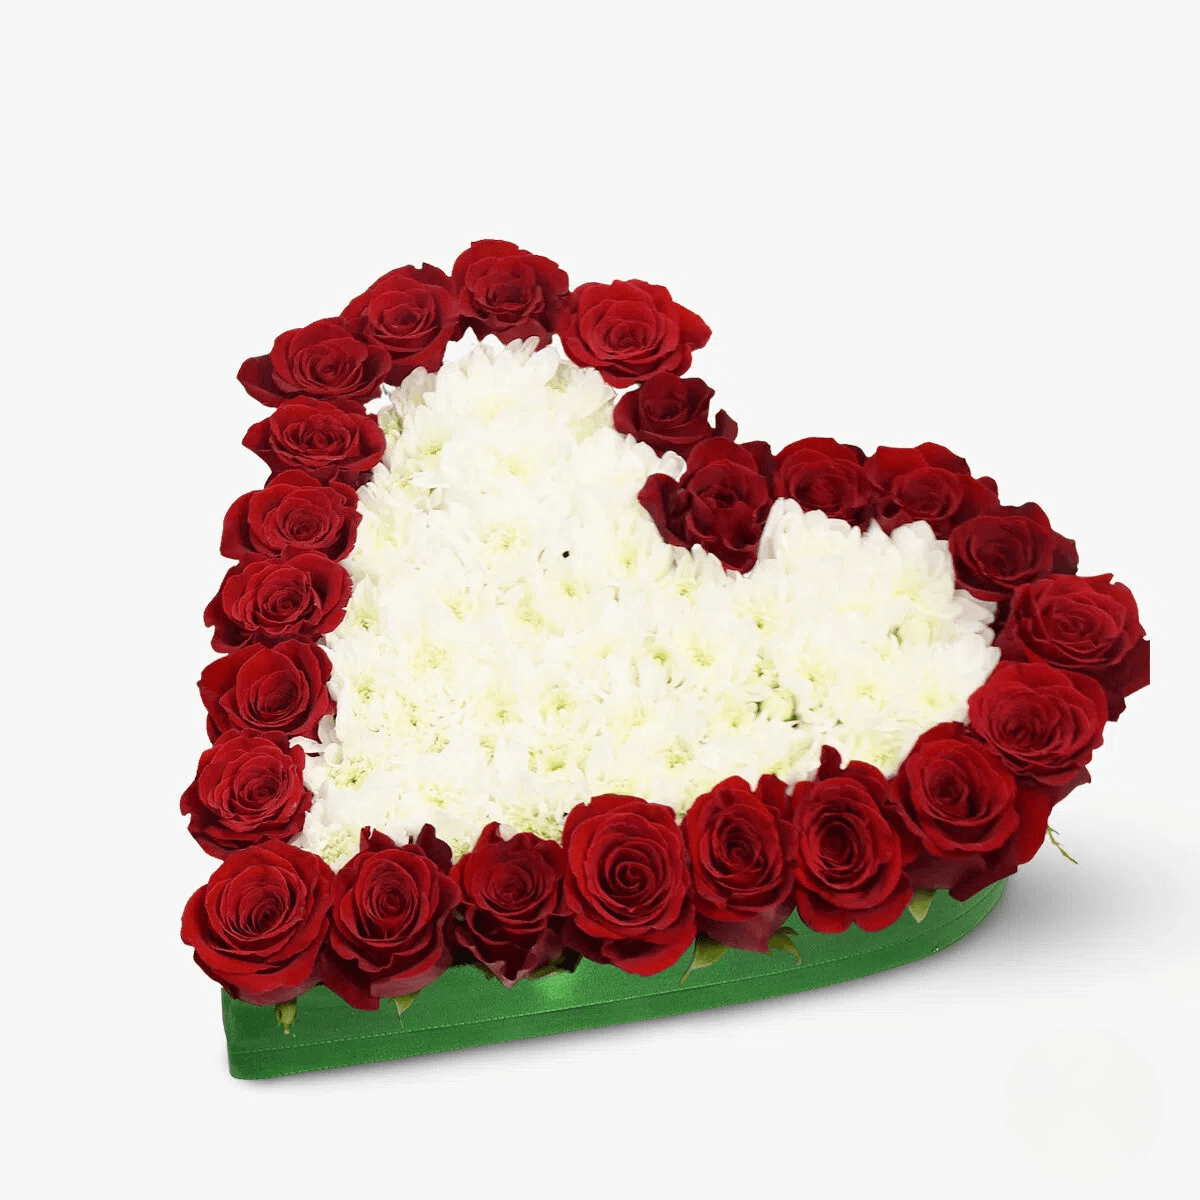 Aranjament in forma de inima cu 18 trandafiri rosii si 15 crizanteme albe – Standard